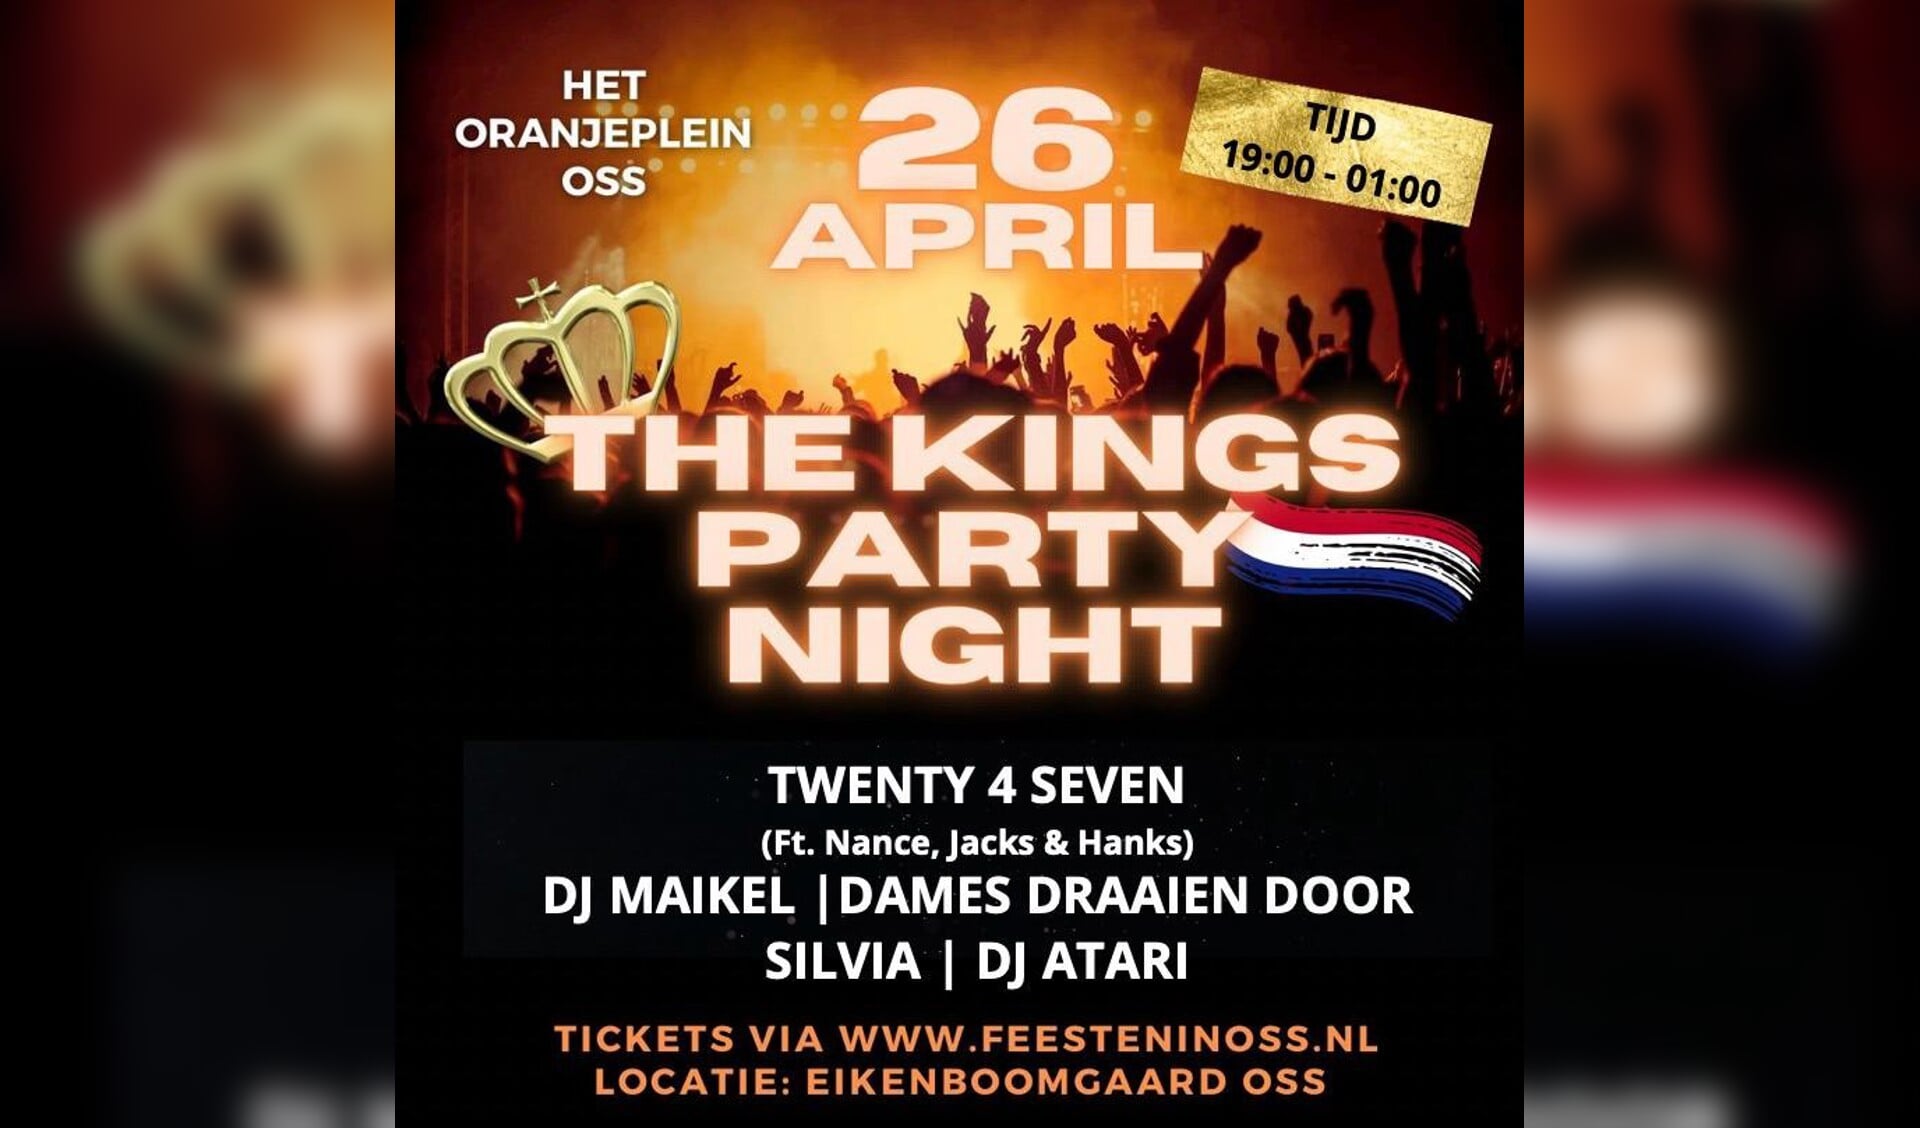 Kings Party Night op het Oranjeplein in Oss.